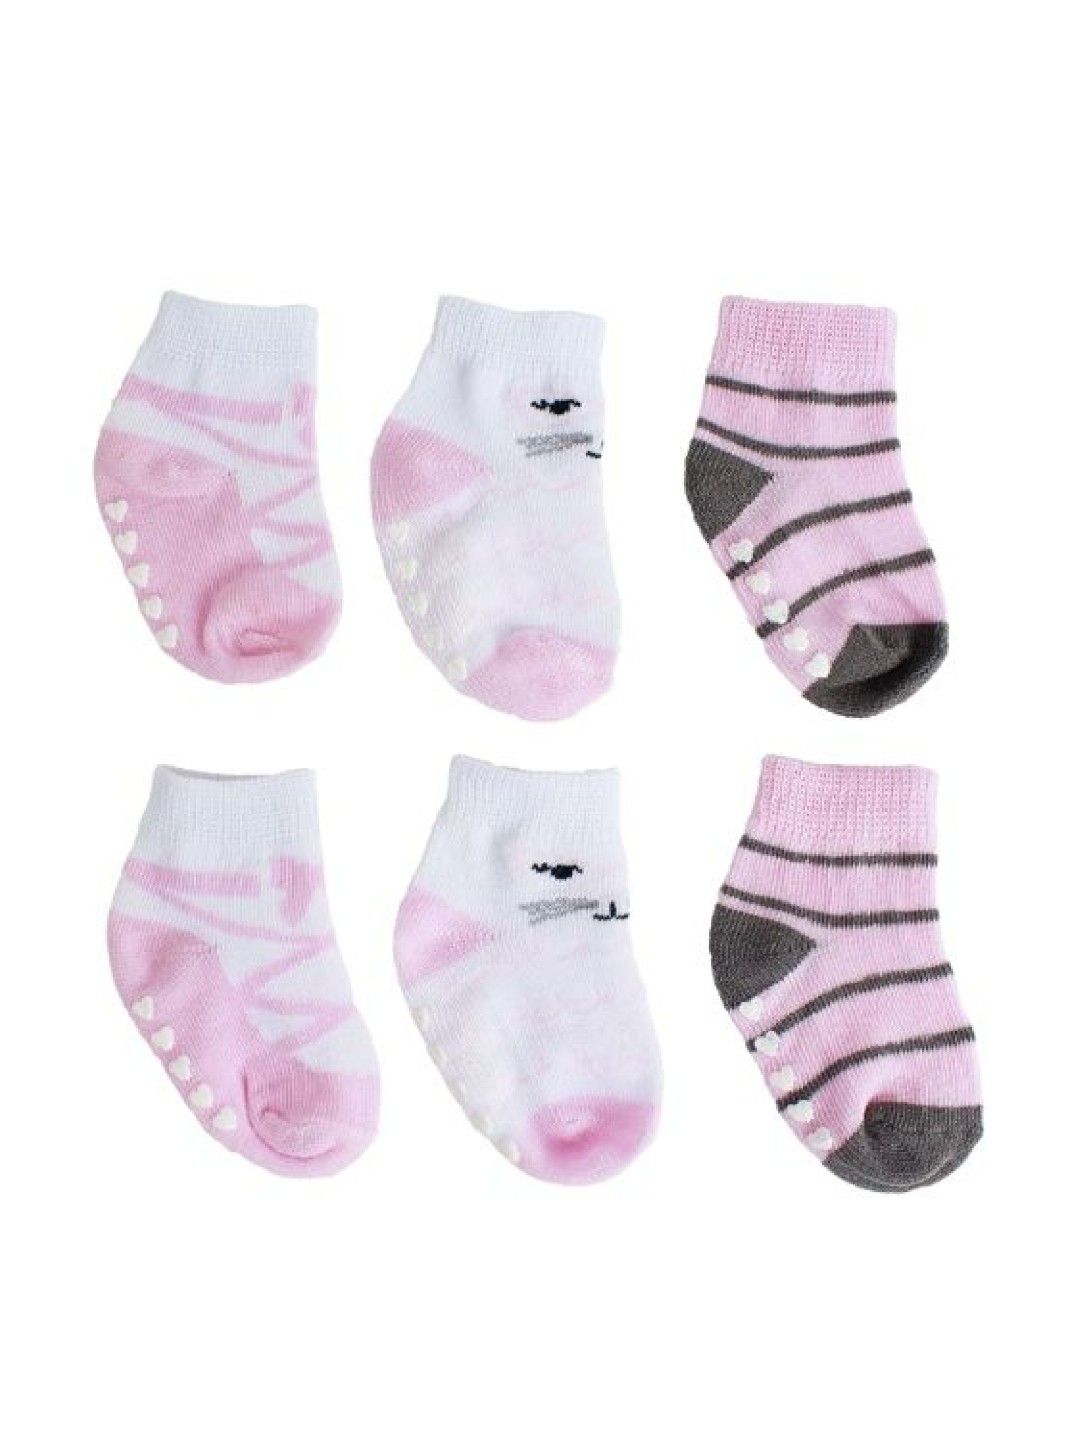 Little Steps Baby Socks For Girls (3 pairs)